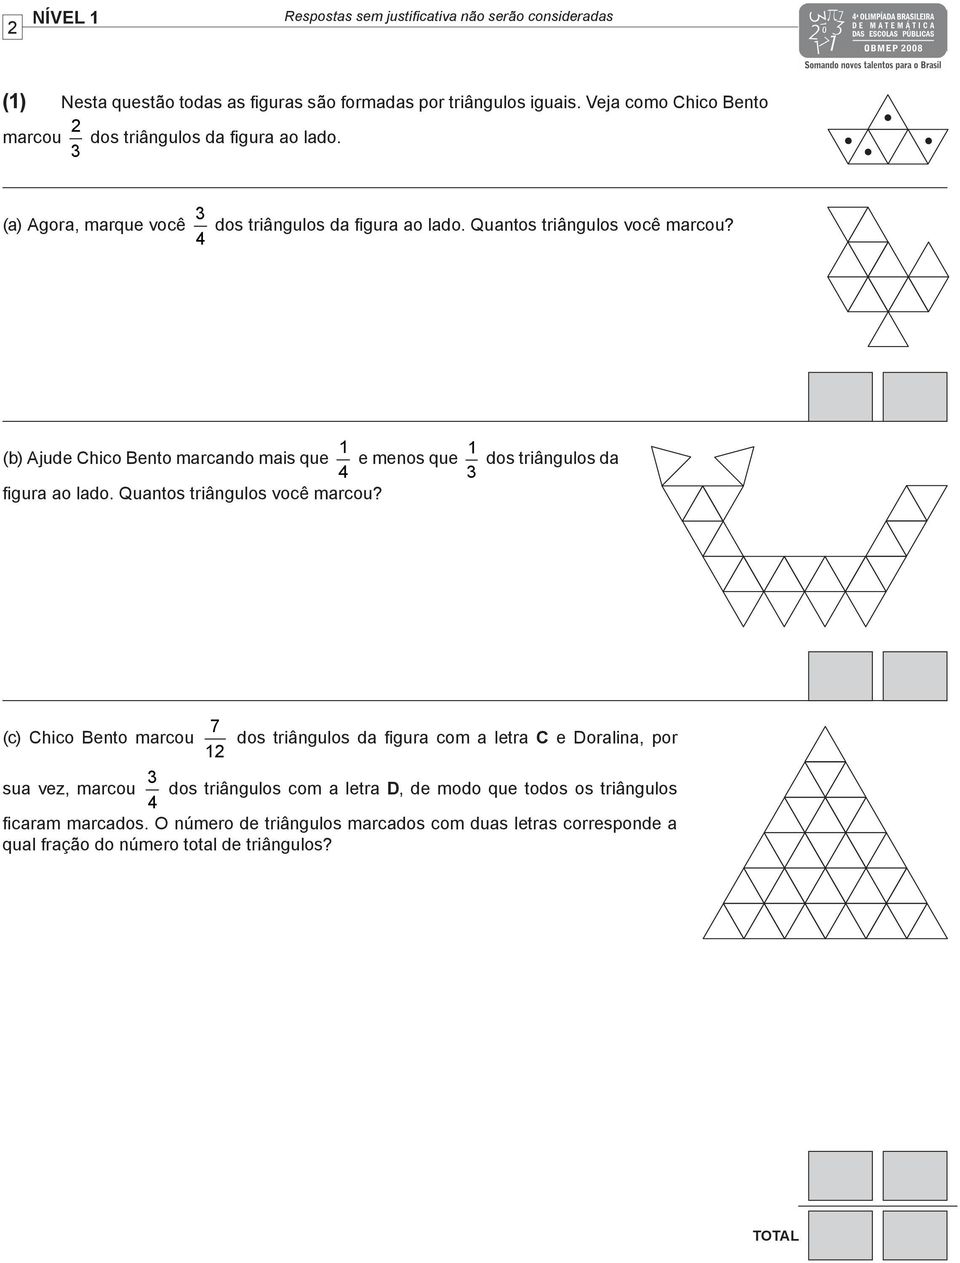 (b) Ajude Chico Bento marcando mais que 1 4 e menos que 1 3 dos triângulos da figura ao lado. Quantos triângulos você marcou?